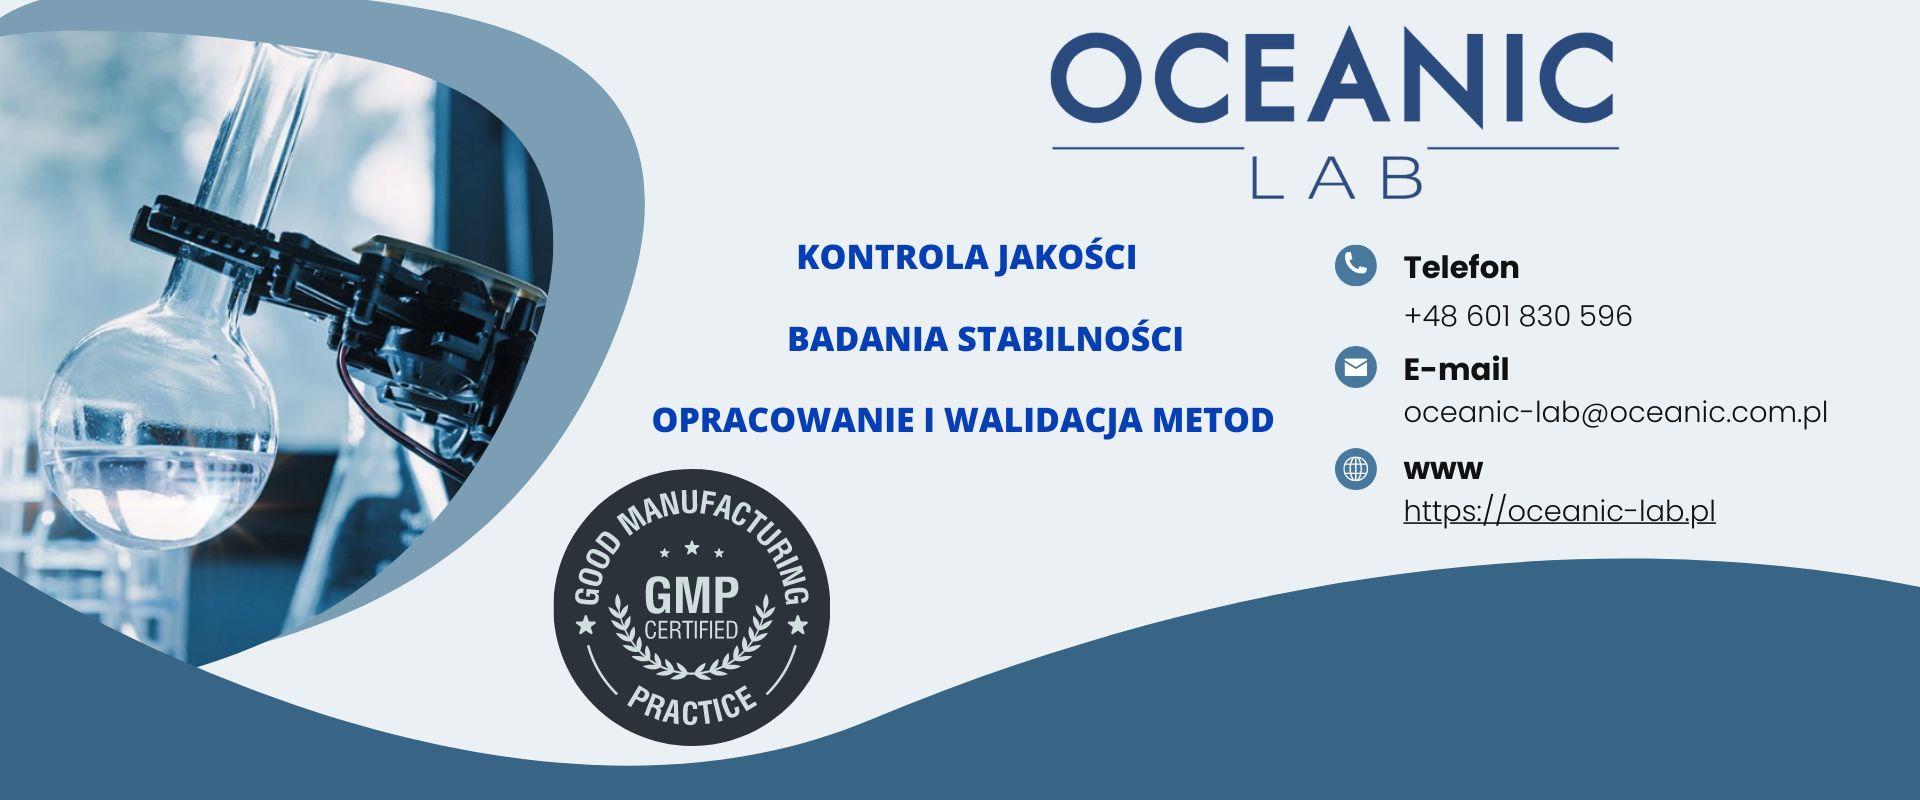 OCEANIC-LAB z ofertą usług kontroli jakości dla klientów zewnętrznych